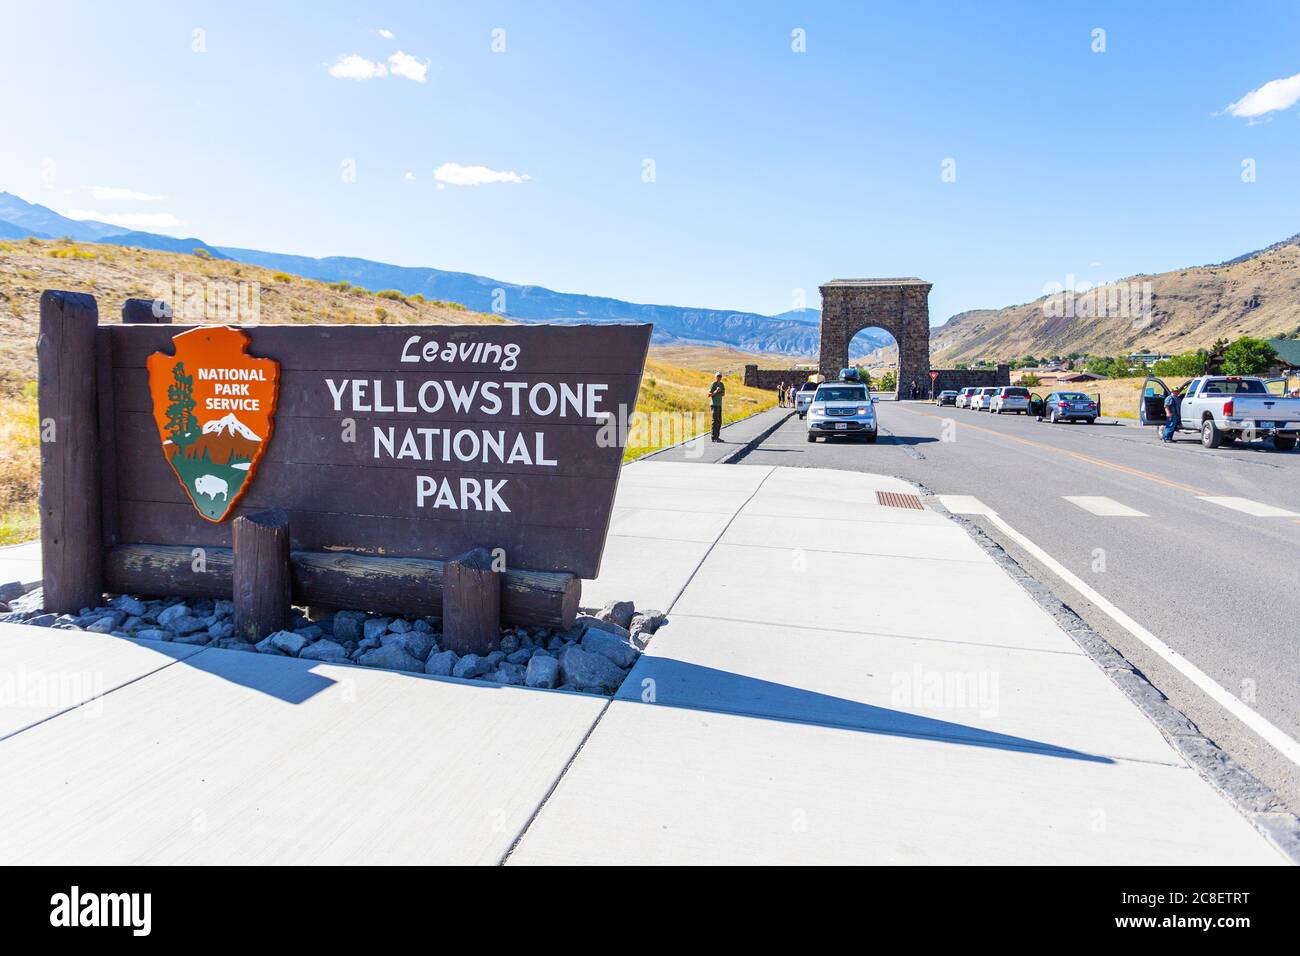 Montana, États-Unis - 28 août 2019 : panneau d'entrée nord à l'entrée de Roosevelt Arch du parc national de Yellowstone à Gardiner, Montana, États-Unis. Banque D'Images